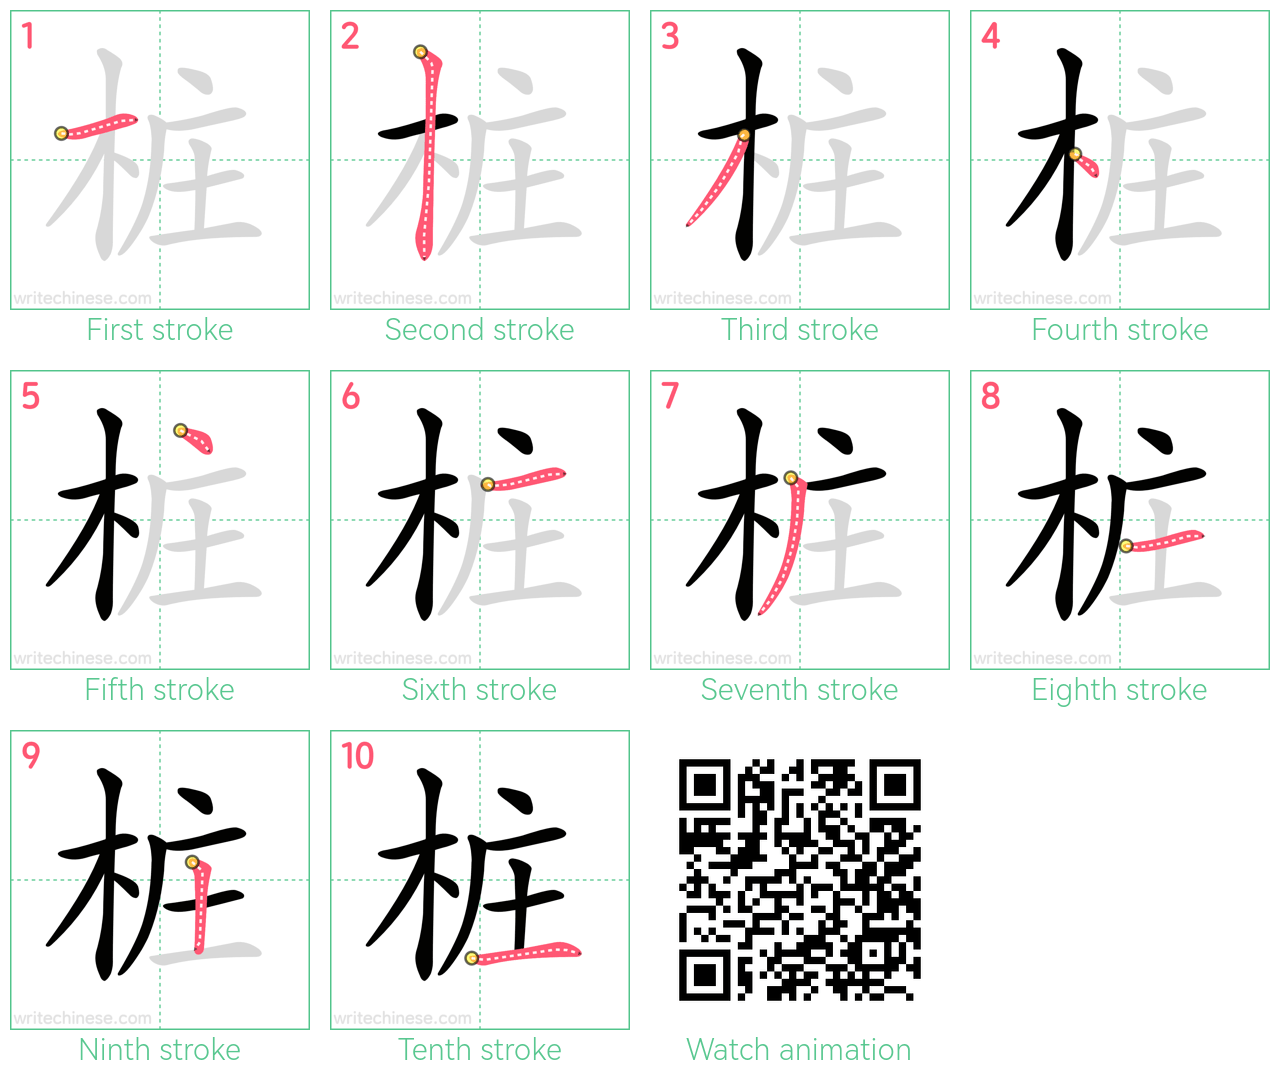 桩 step-by-step stroke order diagrams